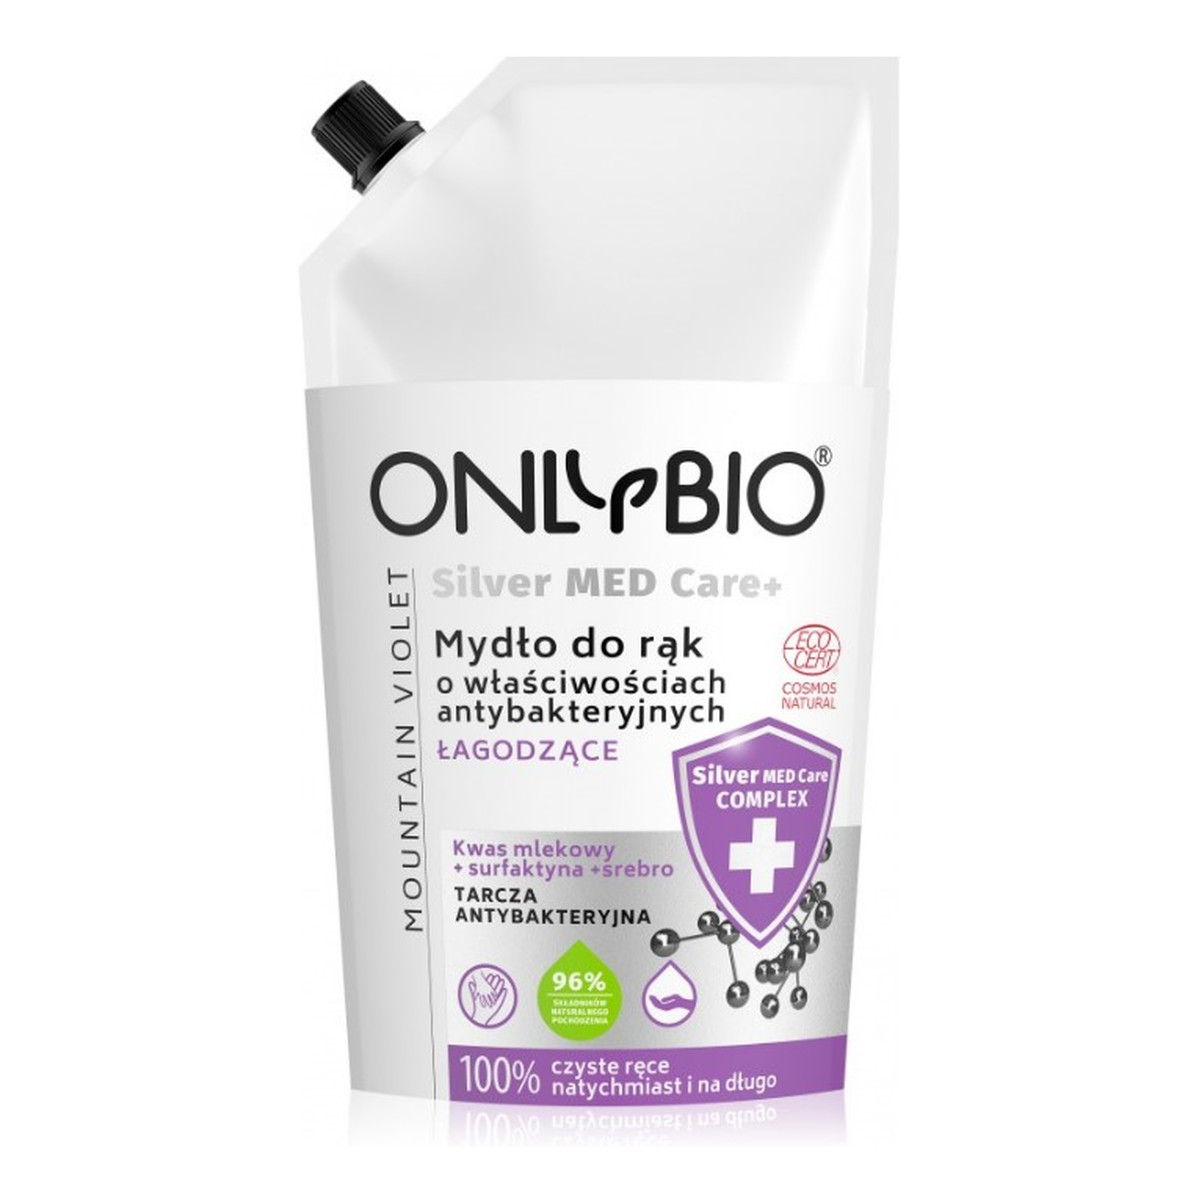 OnlyBio Silver Med Care+ Mydło o właściwościach antybakteryjnych nawilżające 500ml